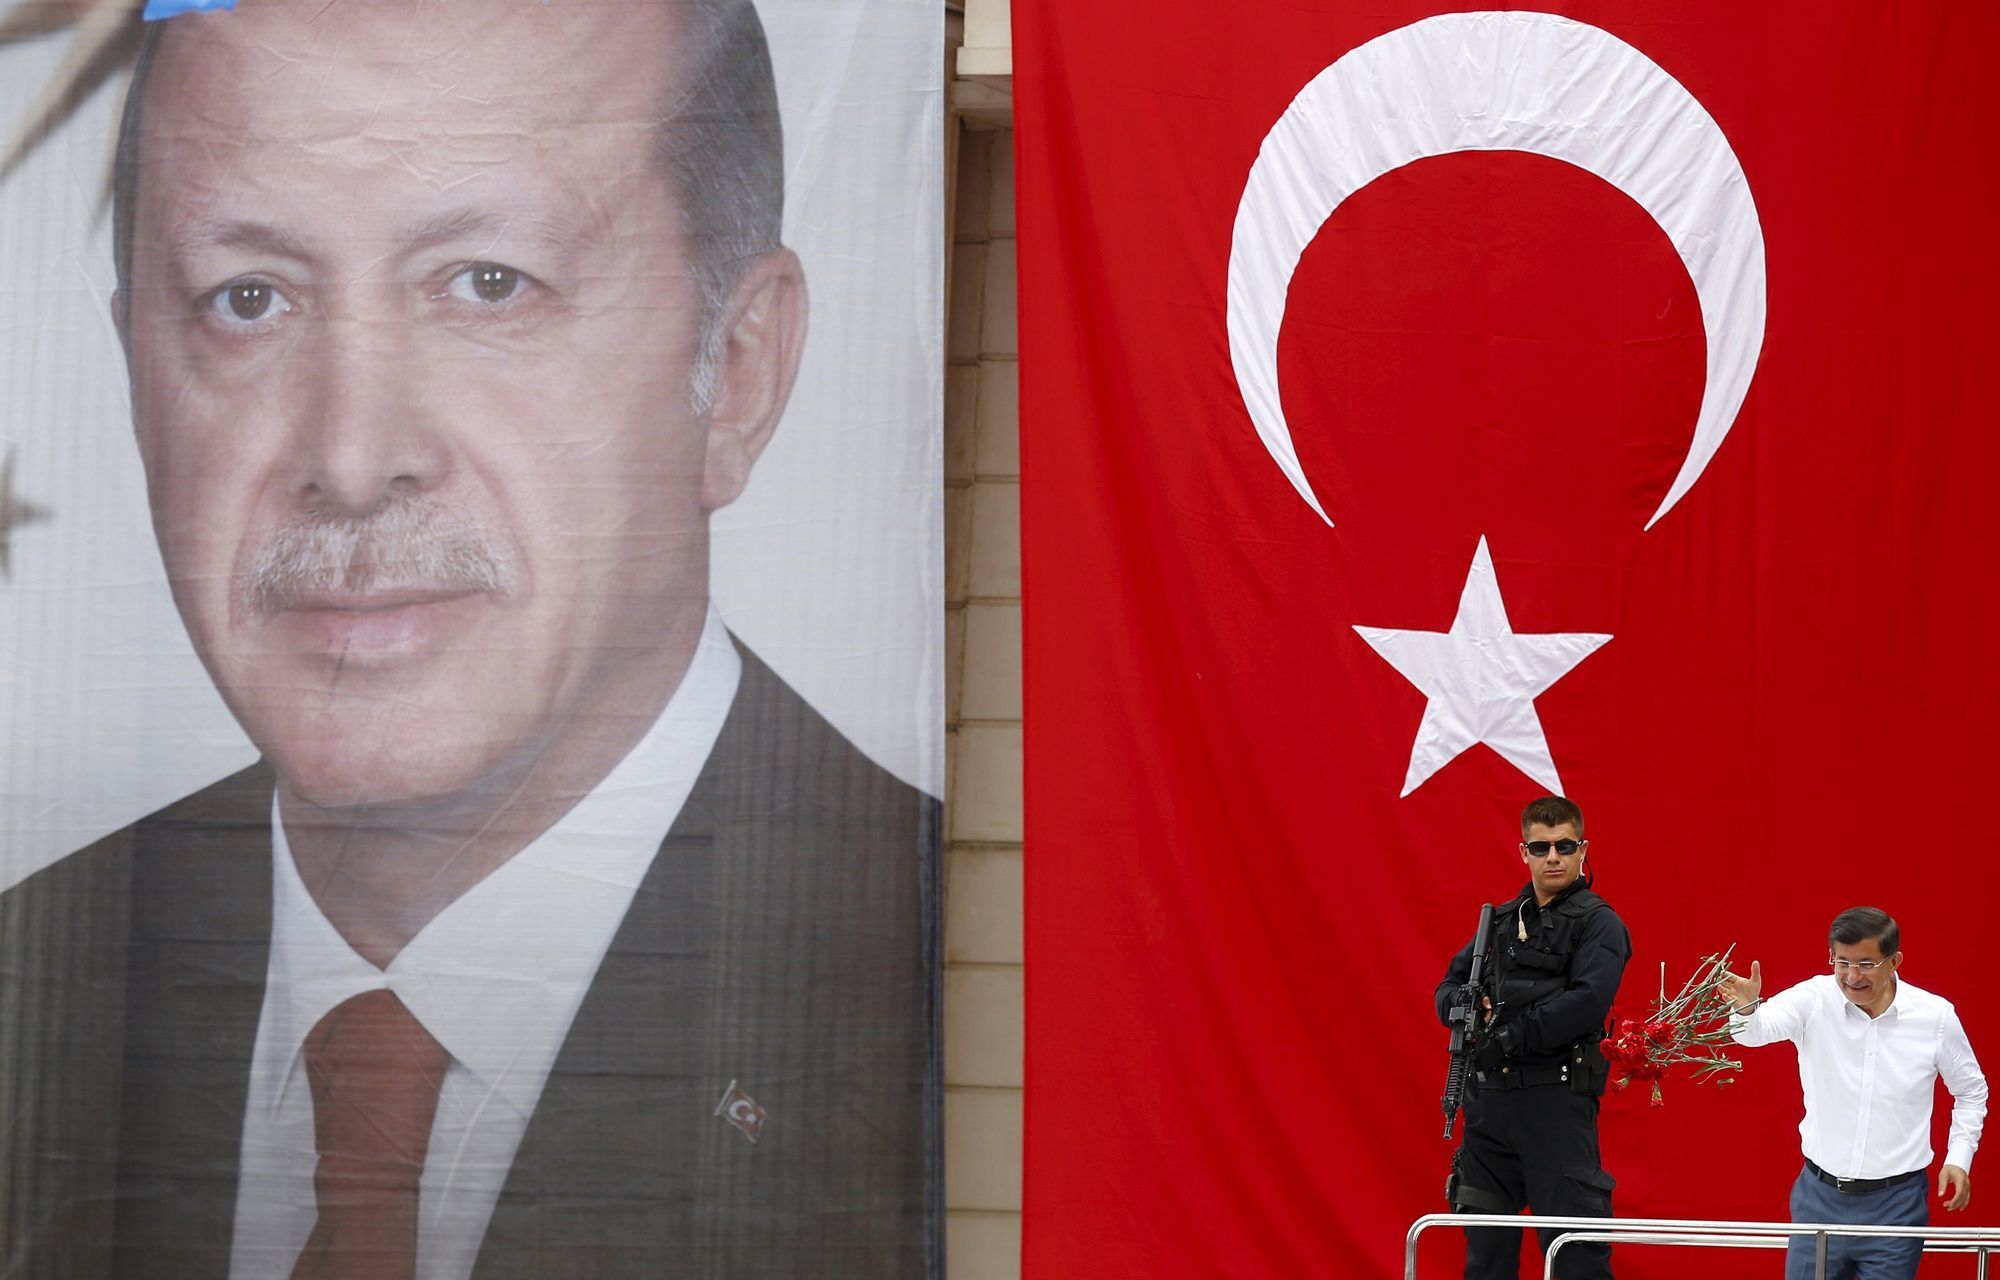 Turecký premiér Davutoglu (vpravo) na pódiu s obřím portrétem prezidenta Erdogana.